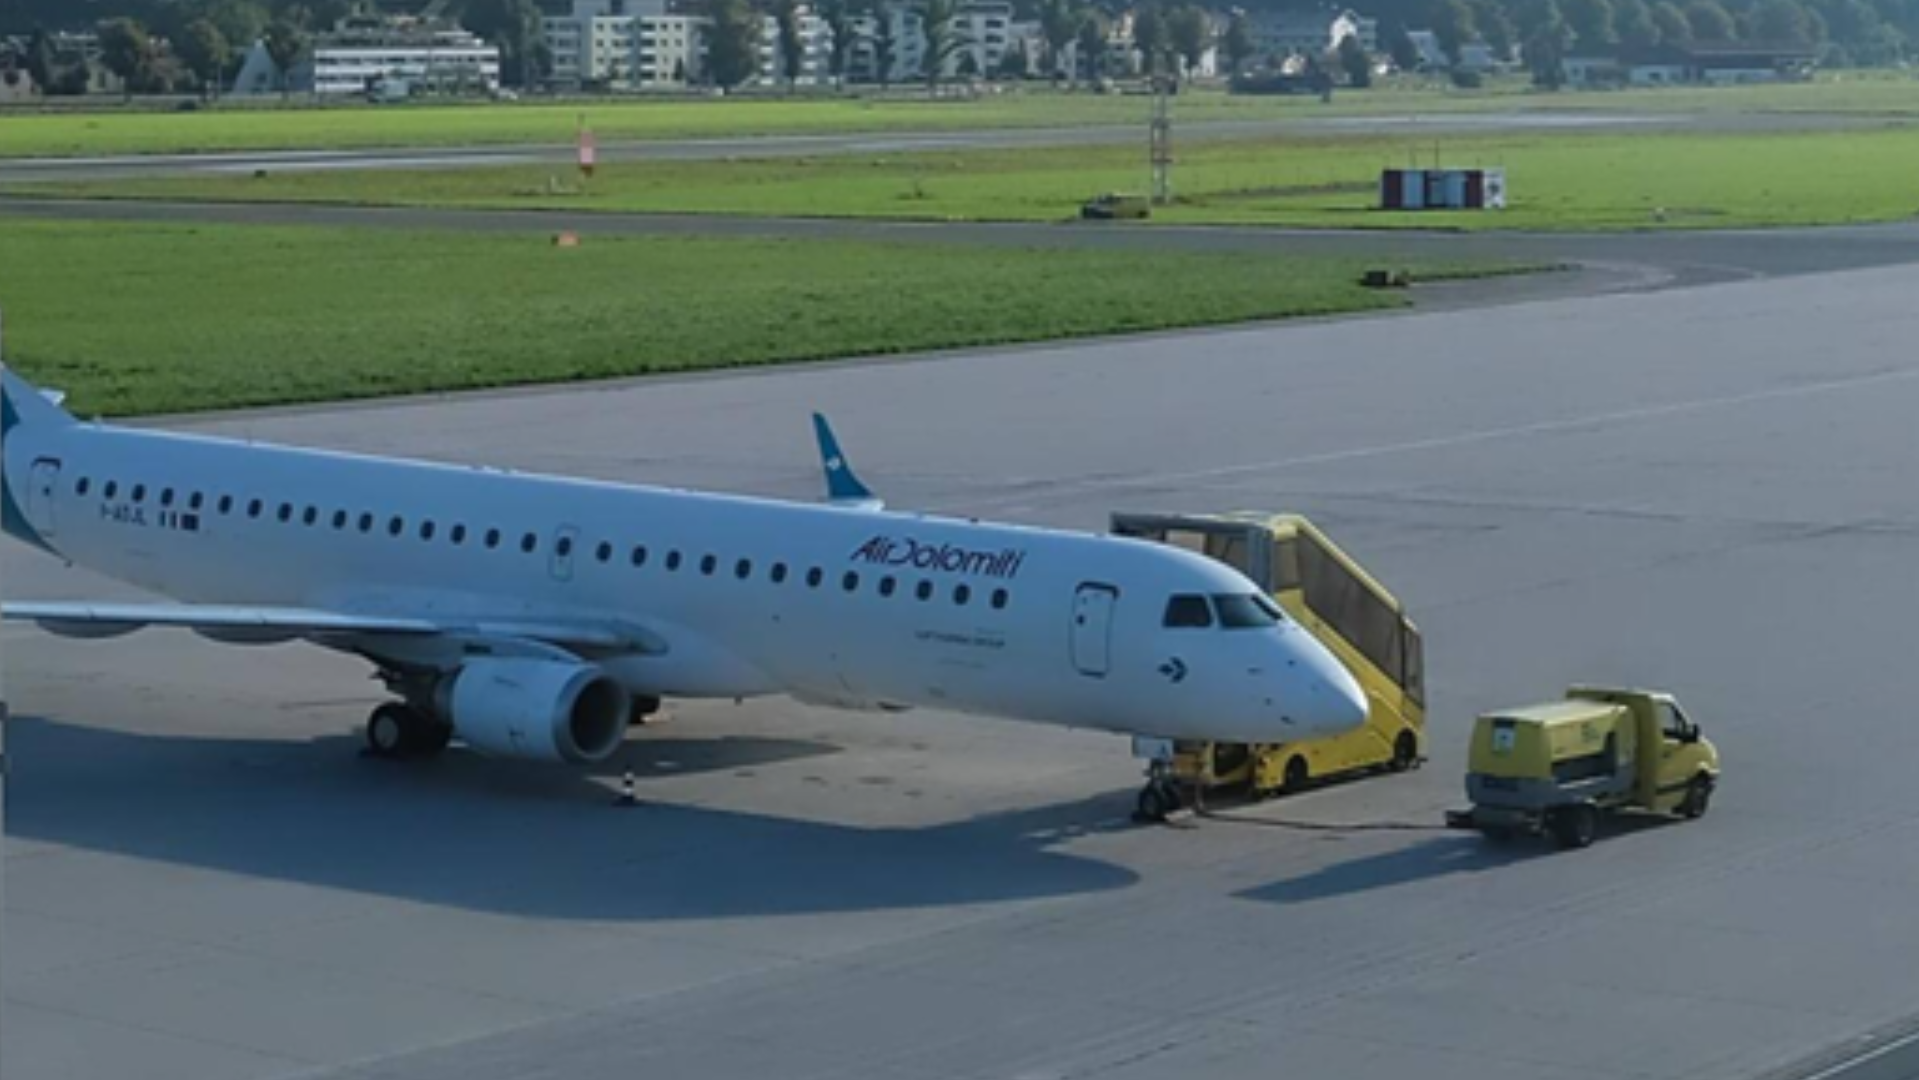 Am Flughafen Innsbruck wird die Maschine von Air Dolomiti nun von Technikern unter die Lupe genommen. (Bild: Flughafen Innsbruck)